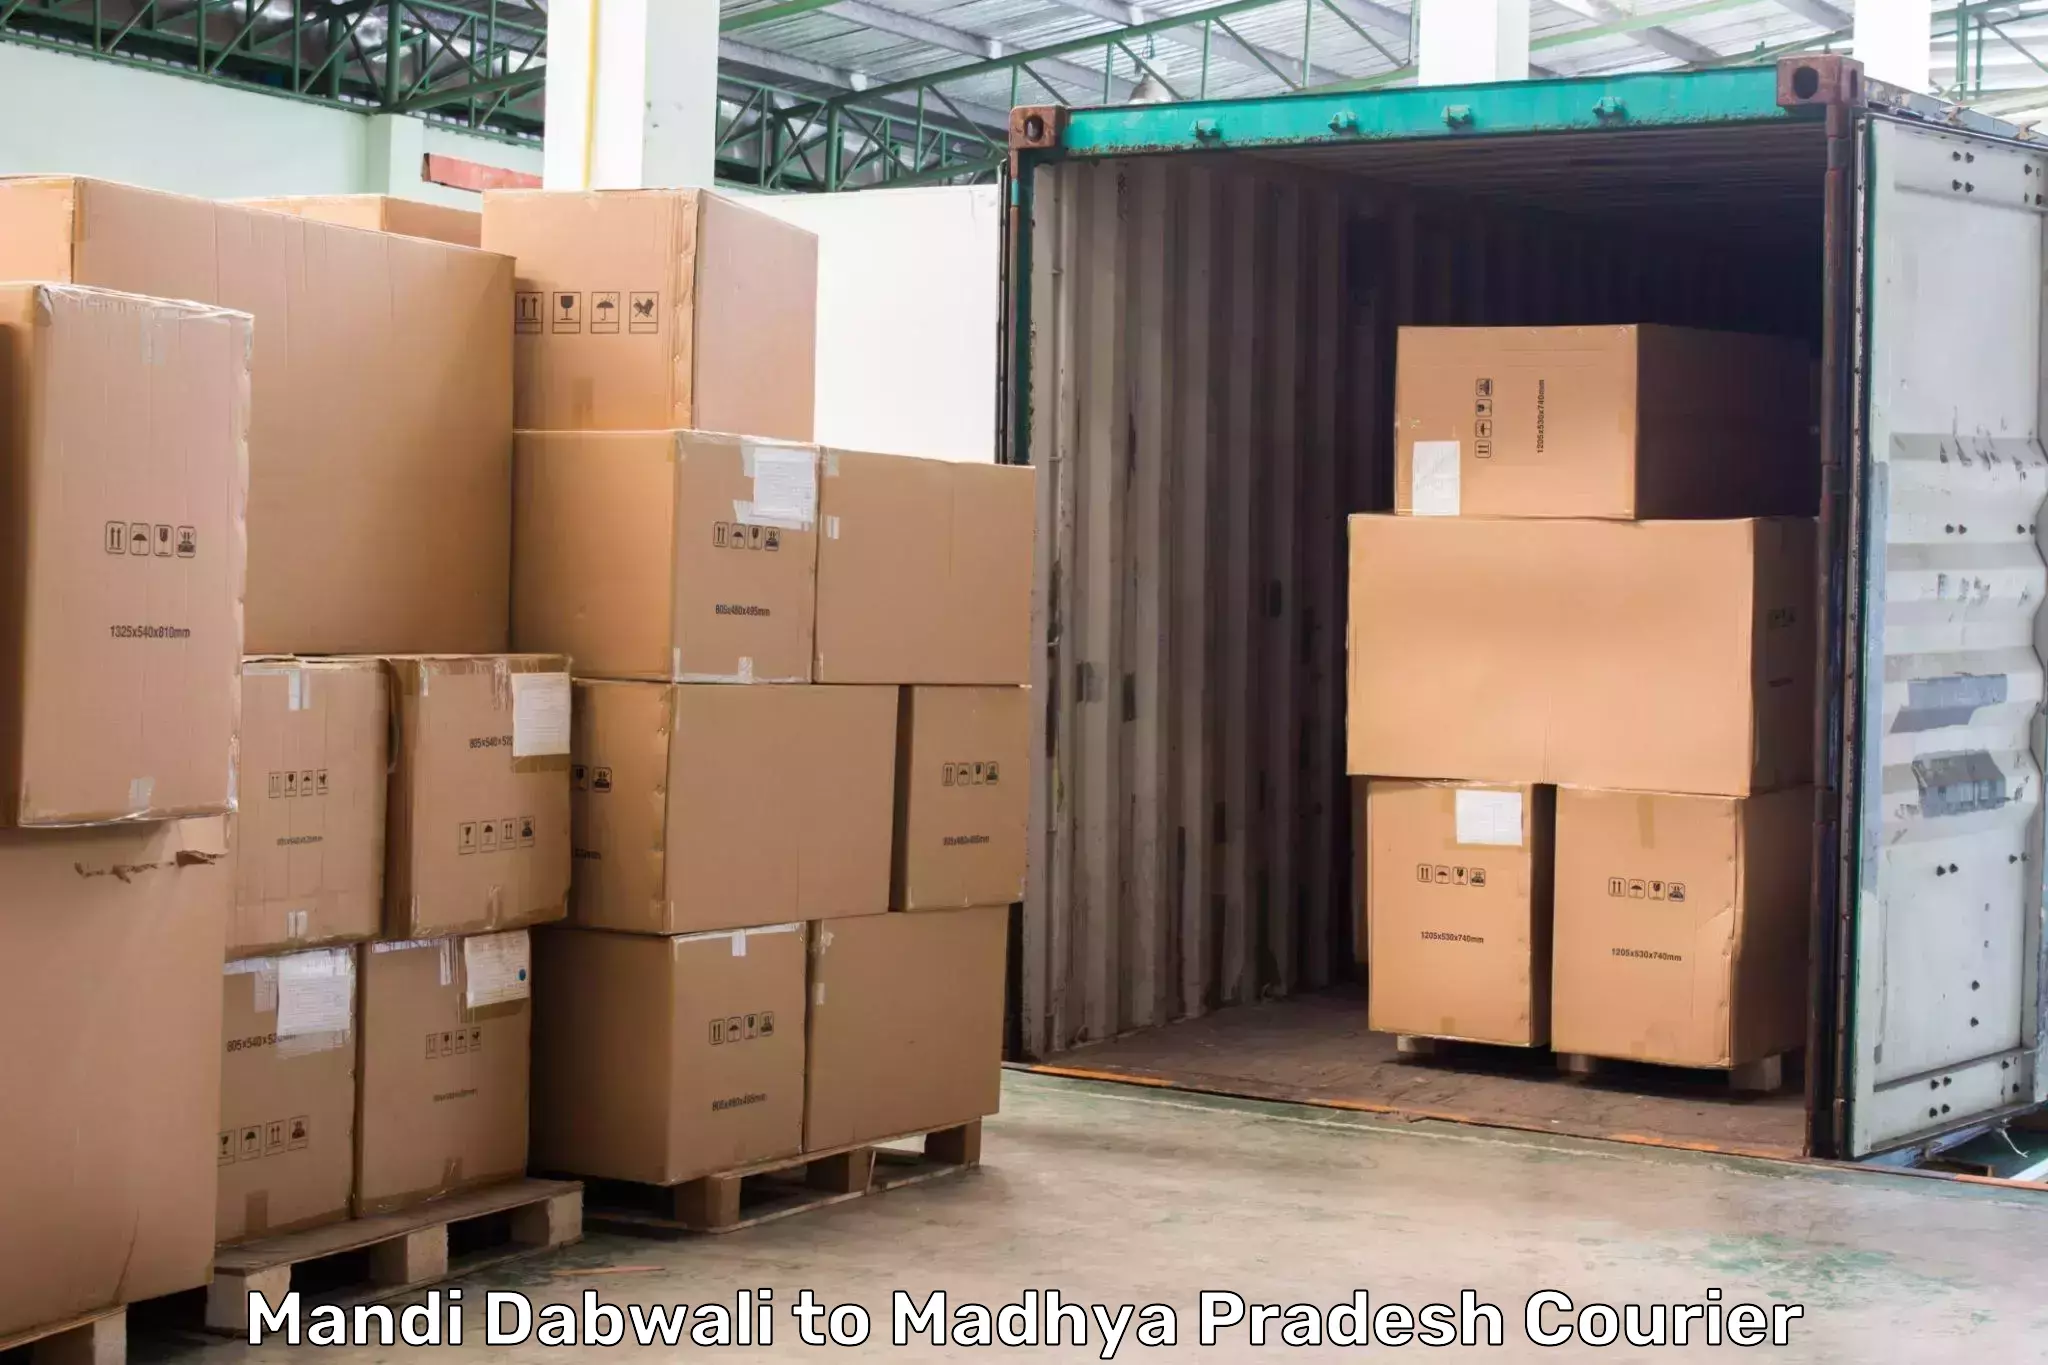 Express mail service Mandi Dabwali to Shivpuri